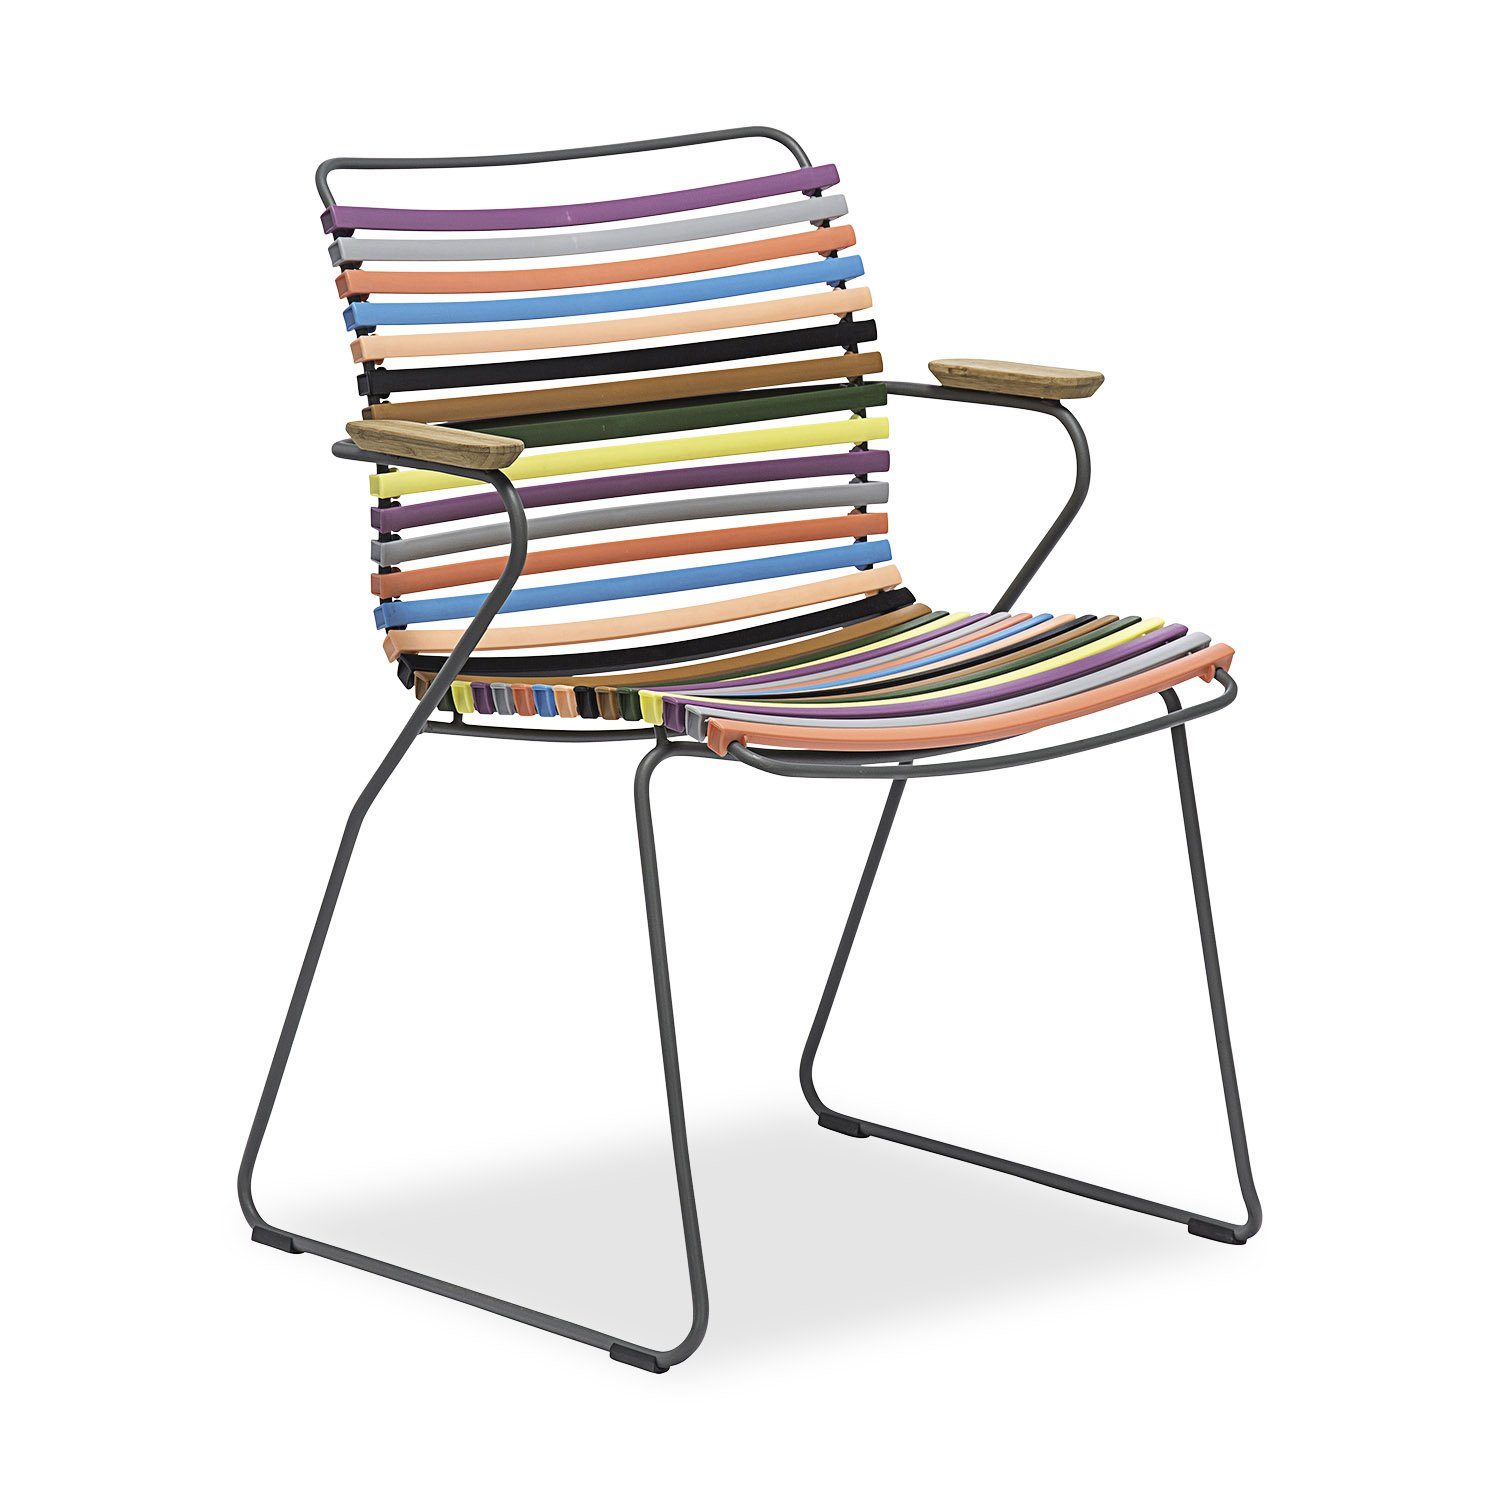 Click karmstol med låg rygg i multicolor 1.